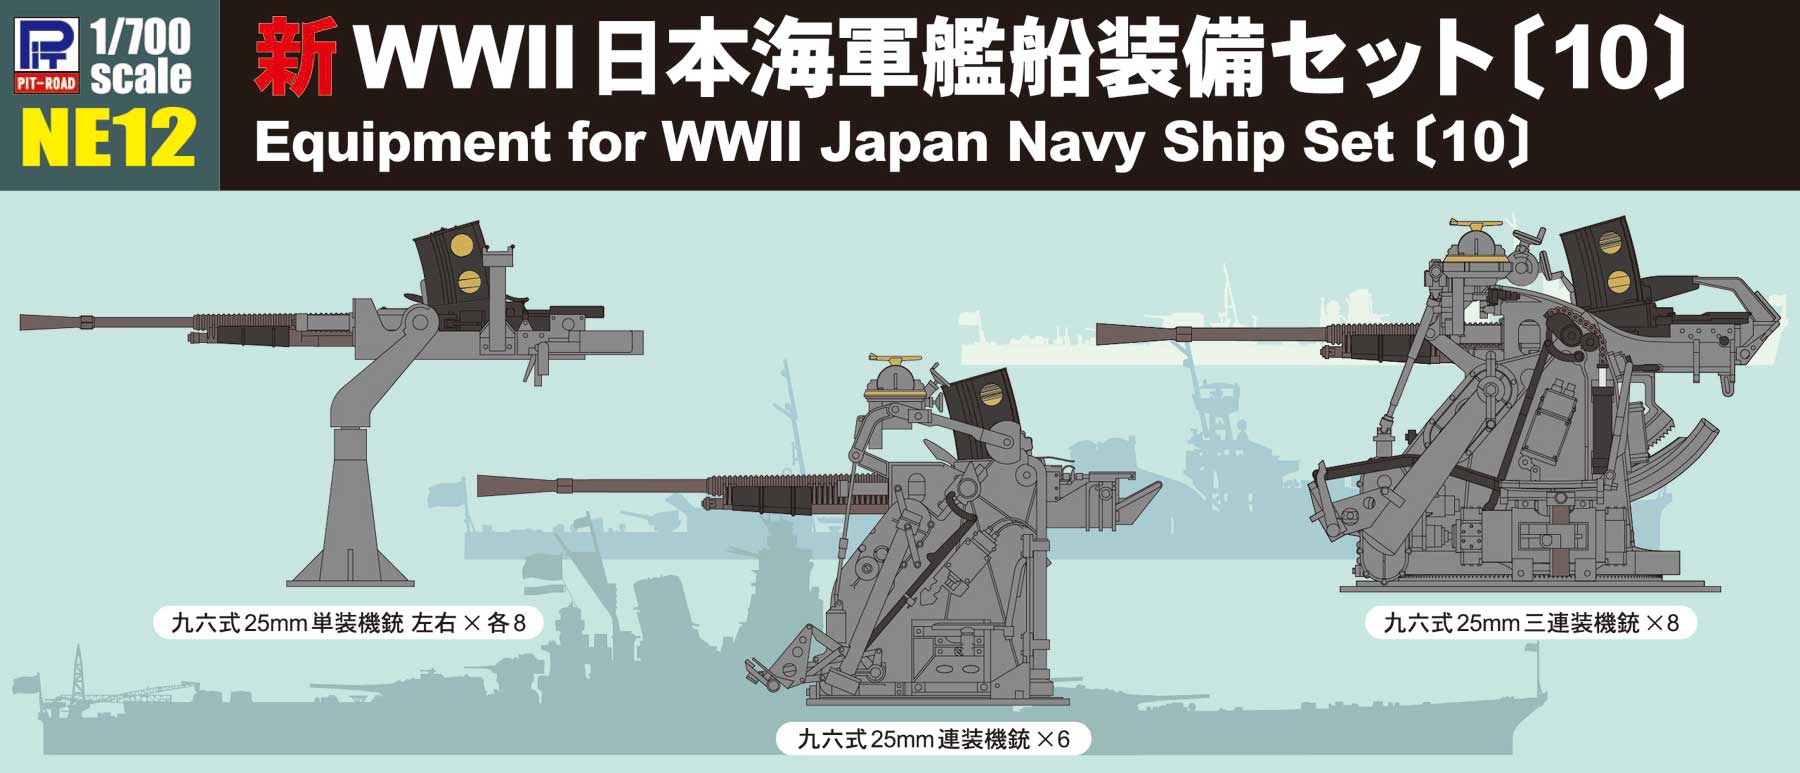 日本軍装備セット - 個人装備